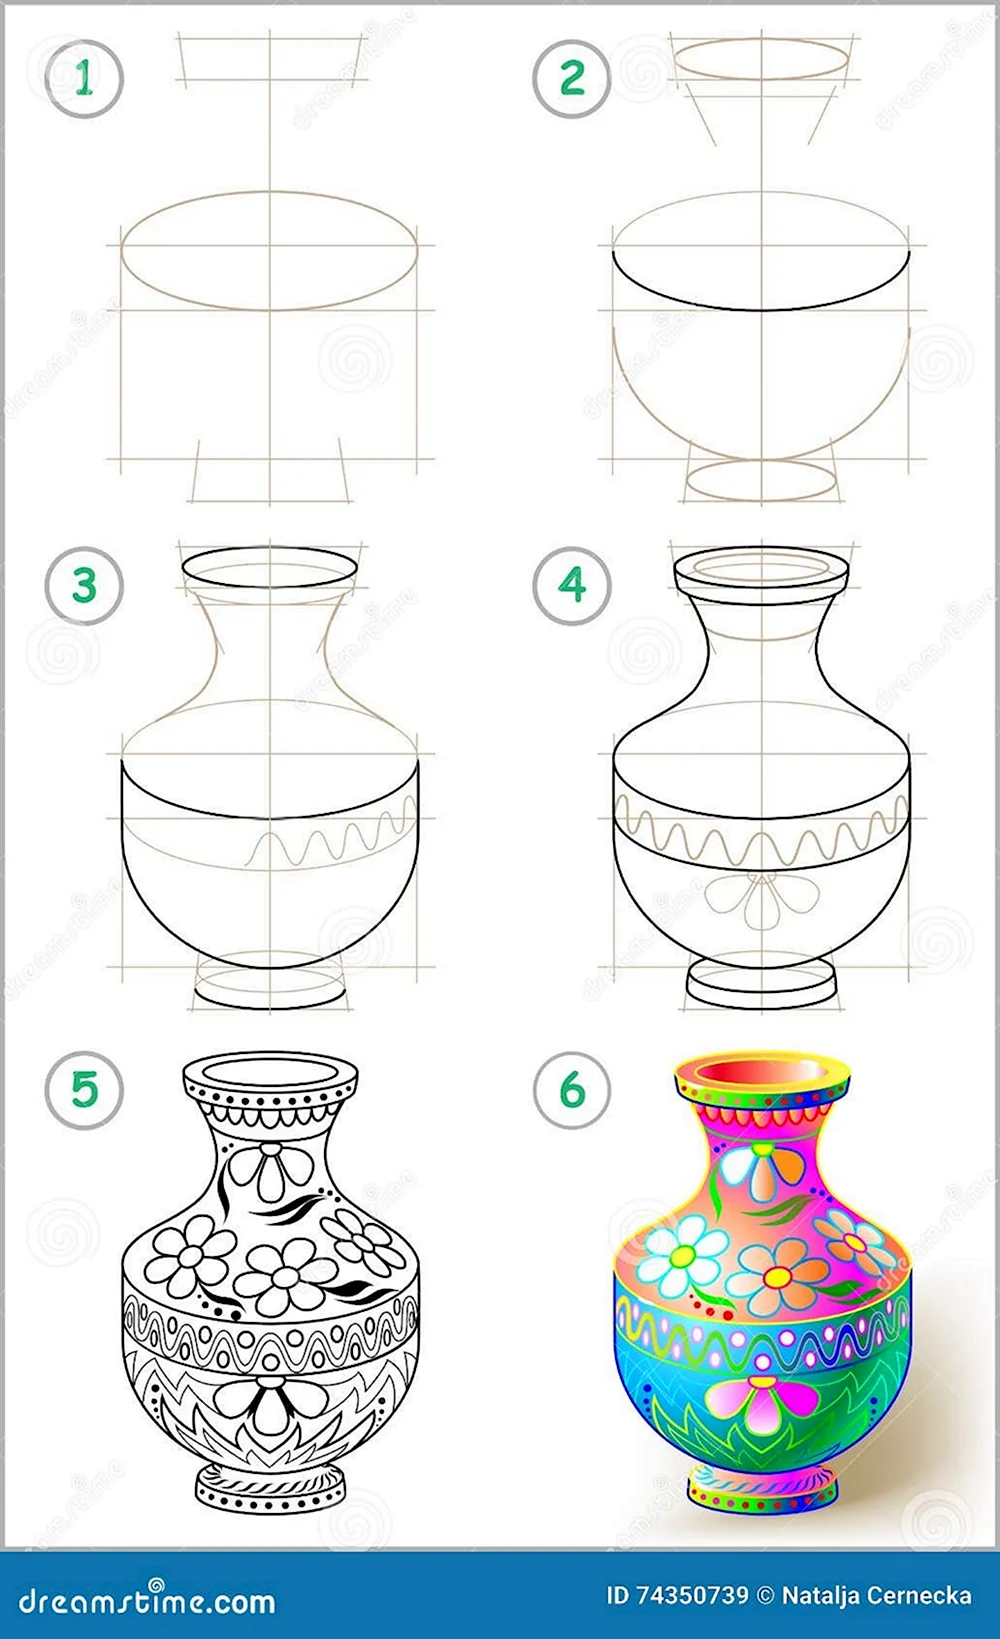 Поэтапный рисунок вазы